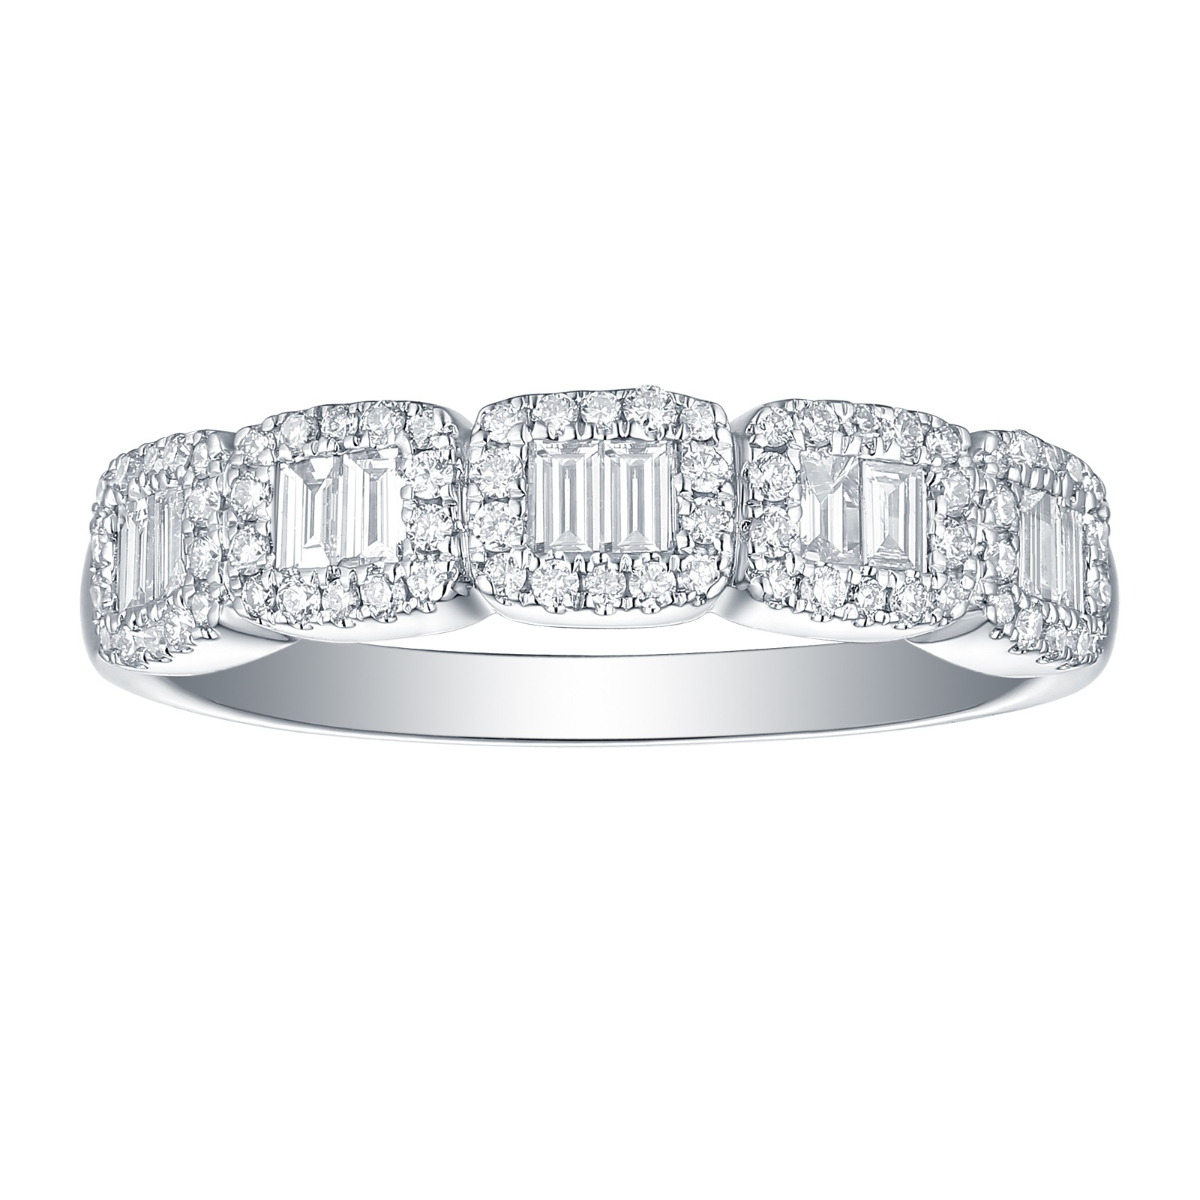 R34817WHT – 18K White Gold Diamond Ring, 0.51 TCW